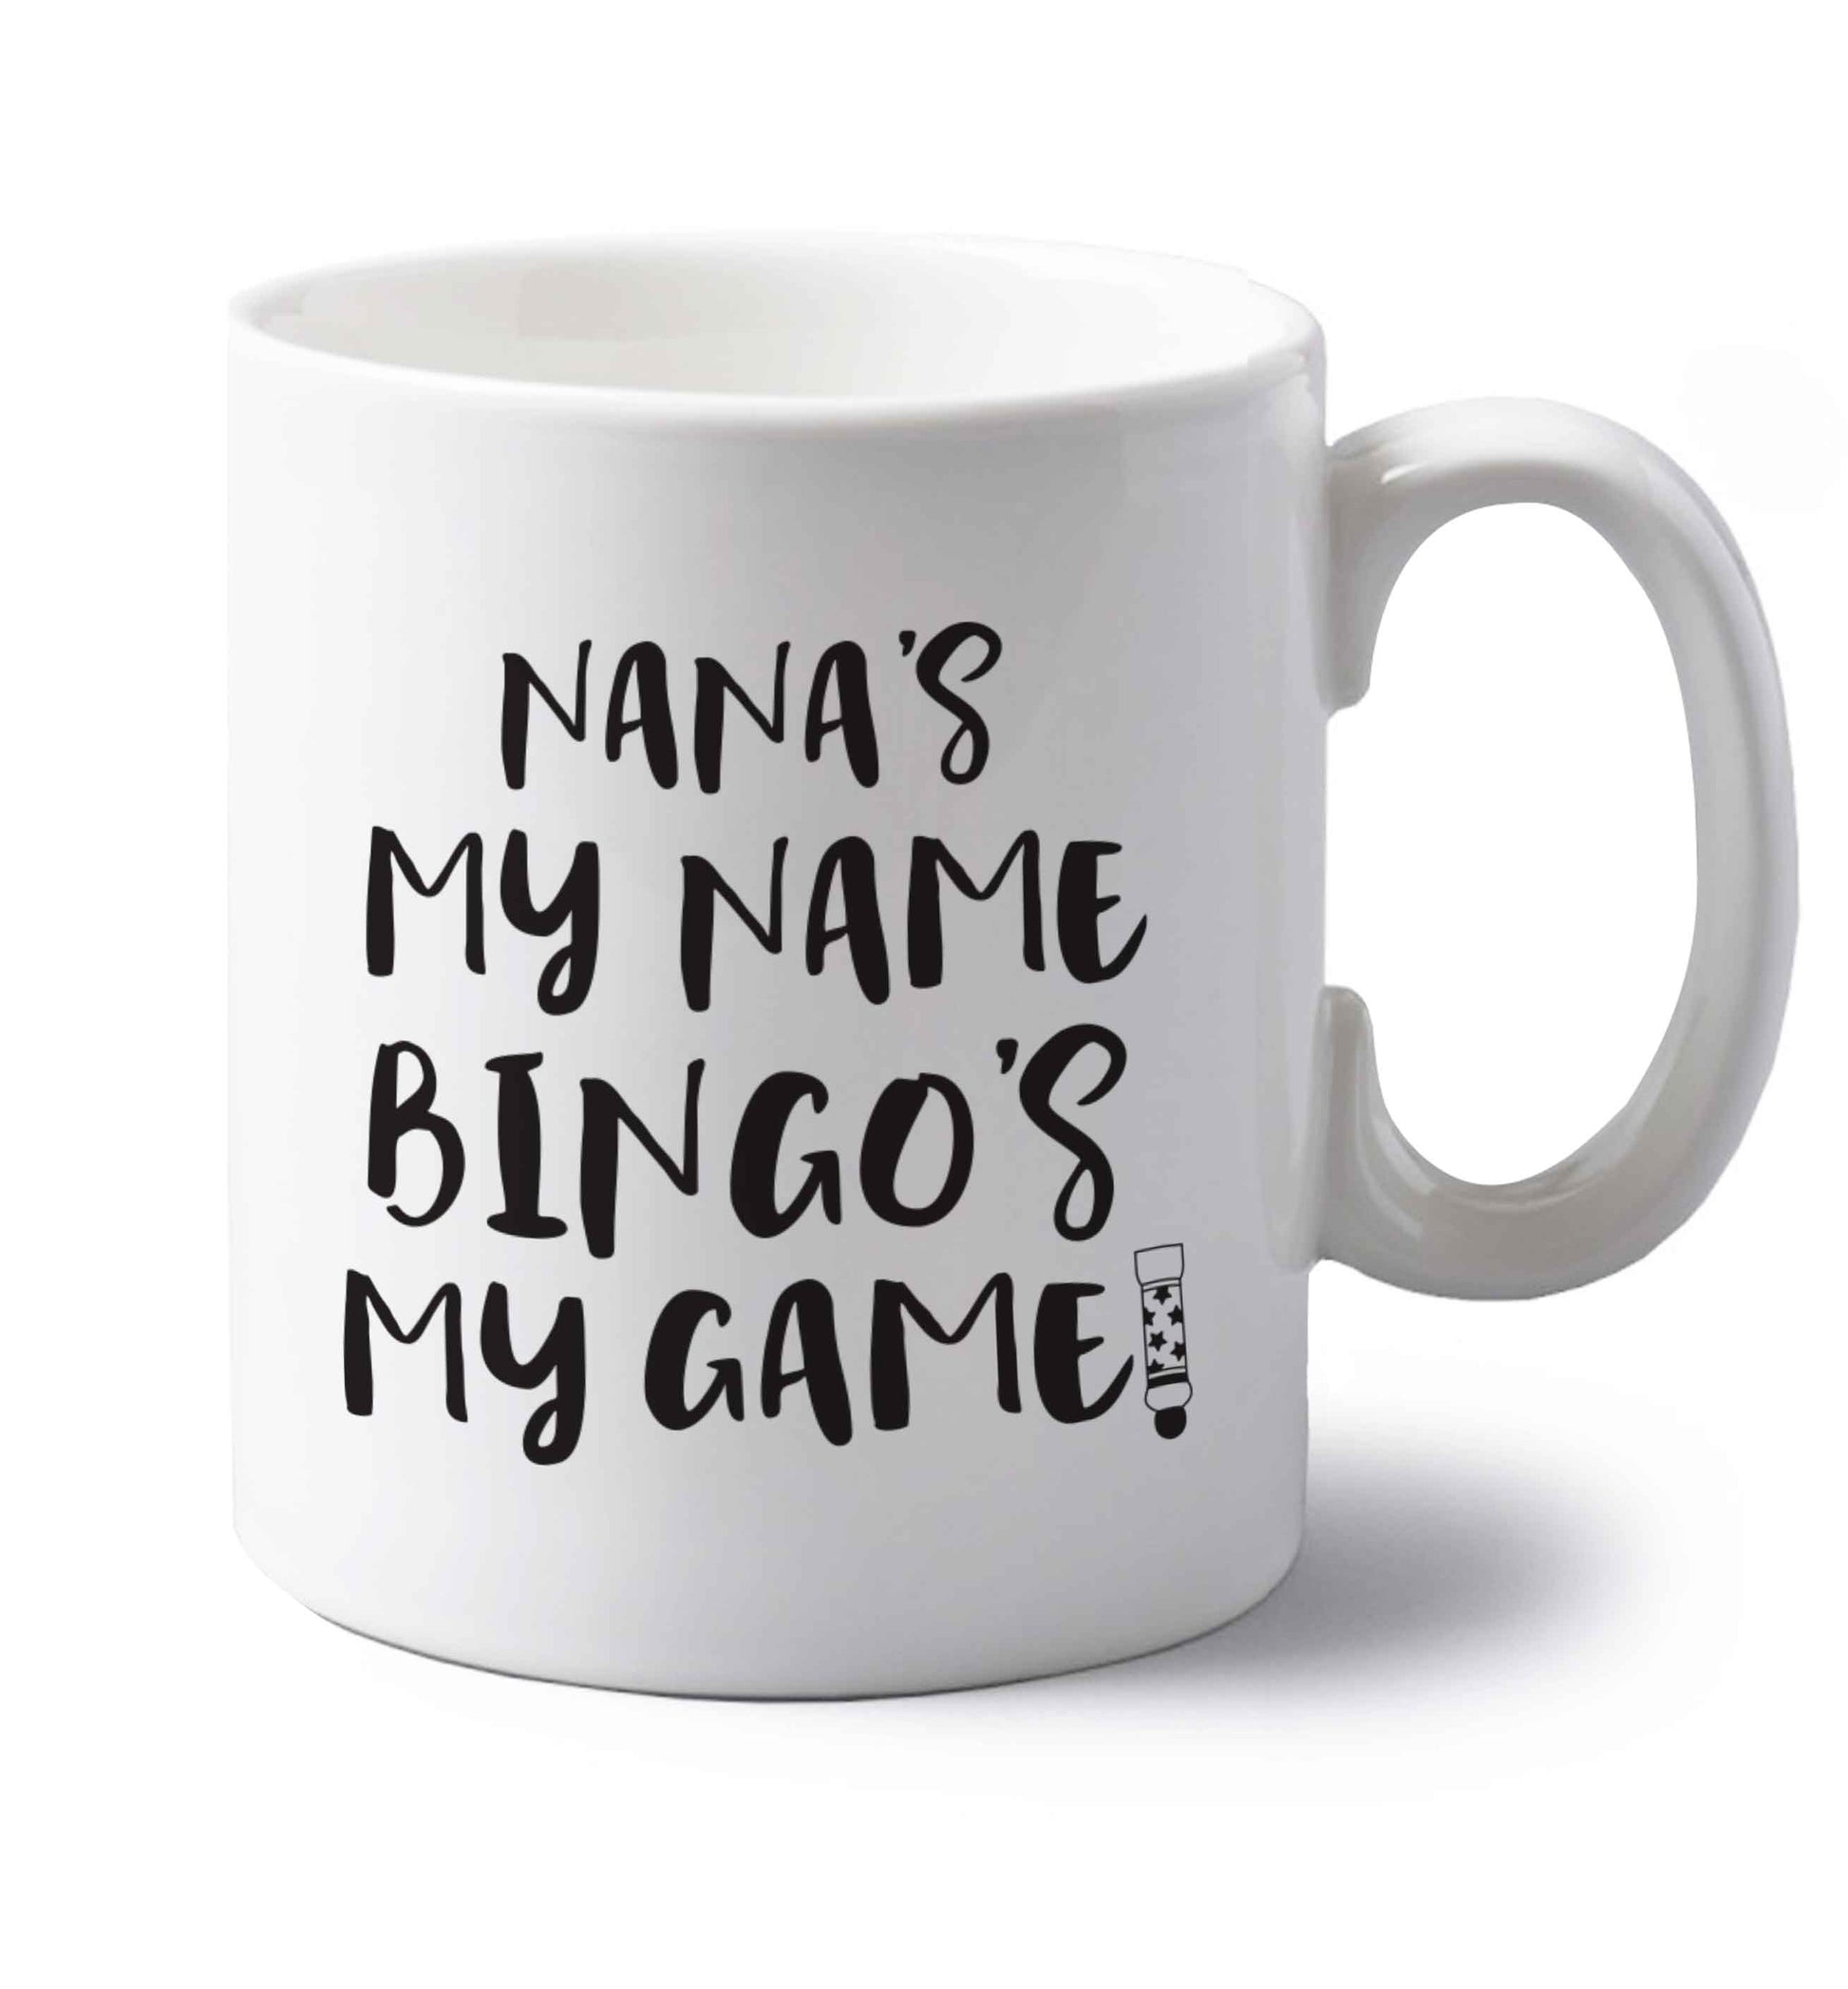 Nana's my name bingo's my game! left handed white ceramic mug 